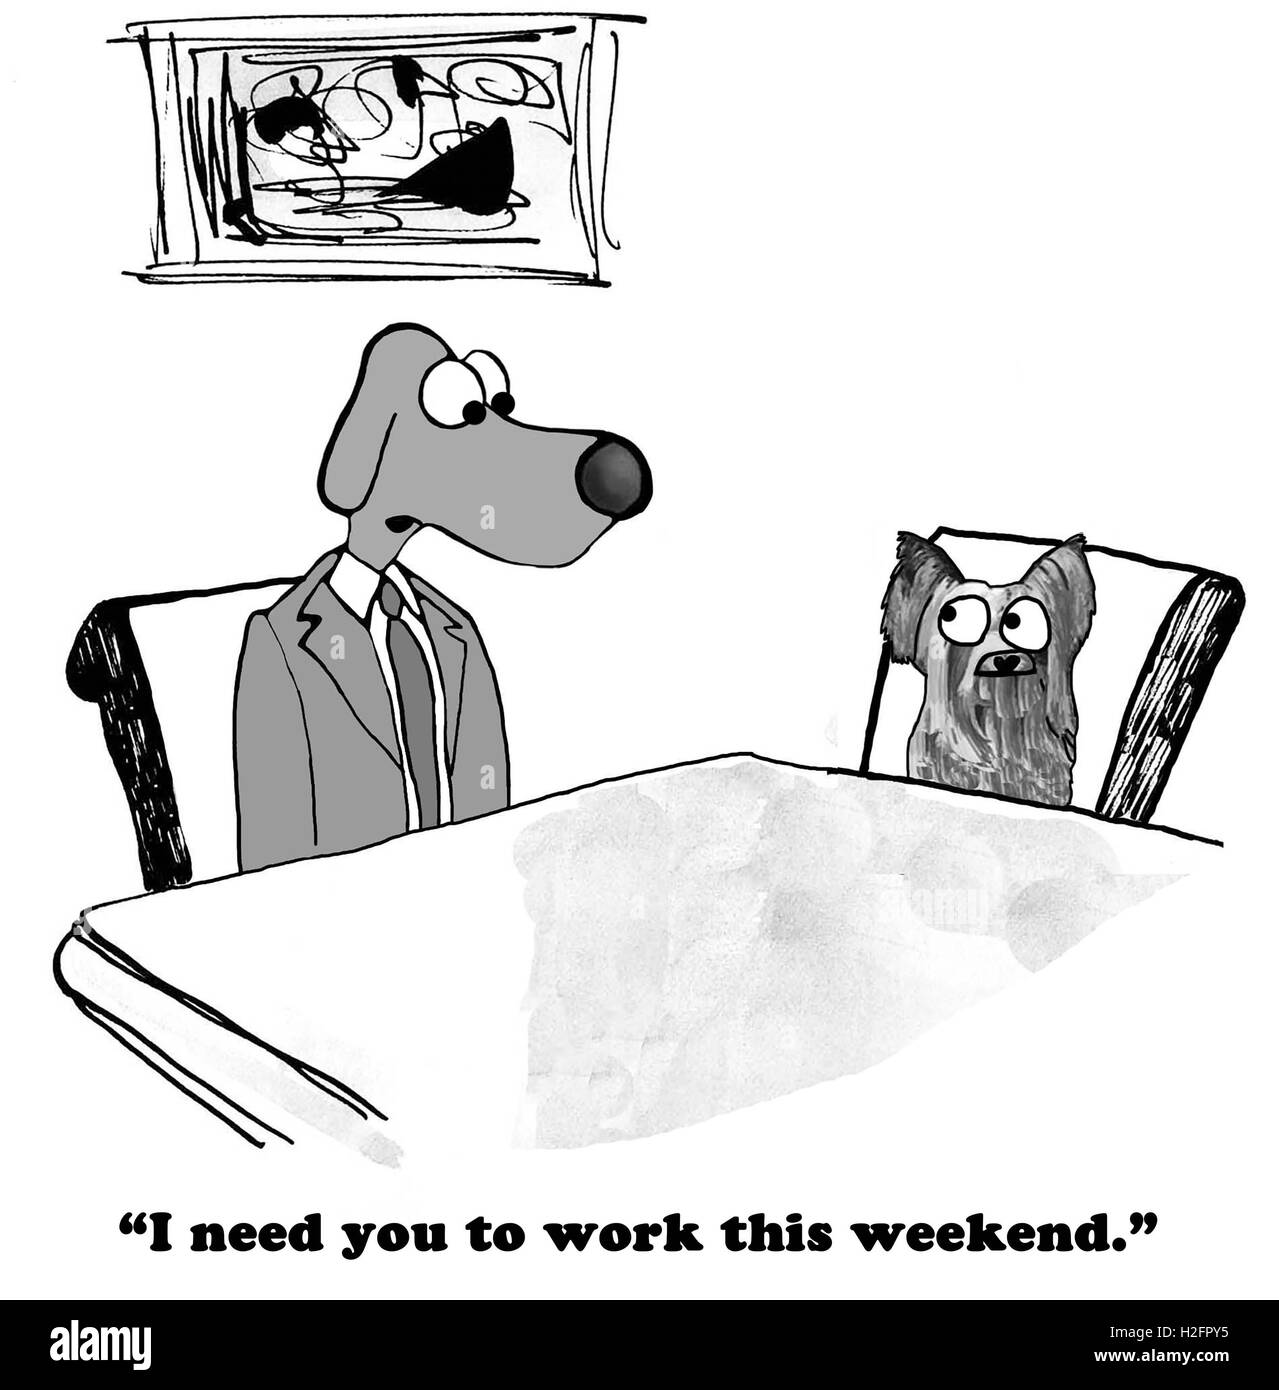 B&W business illustration de chien patron employé indiquant qu'il a à travailler pendant la fin de semaine. Banque D'Images